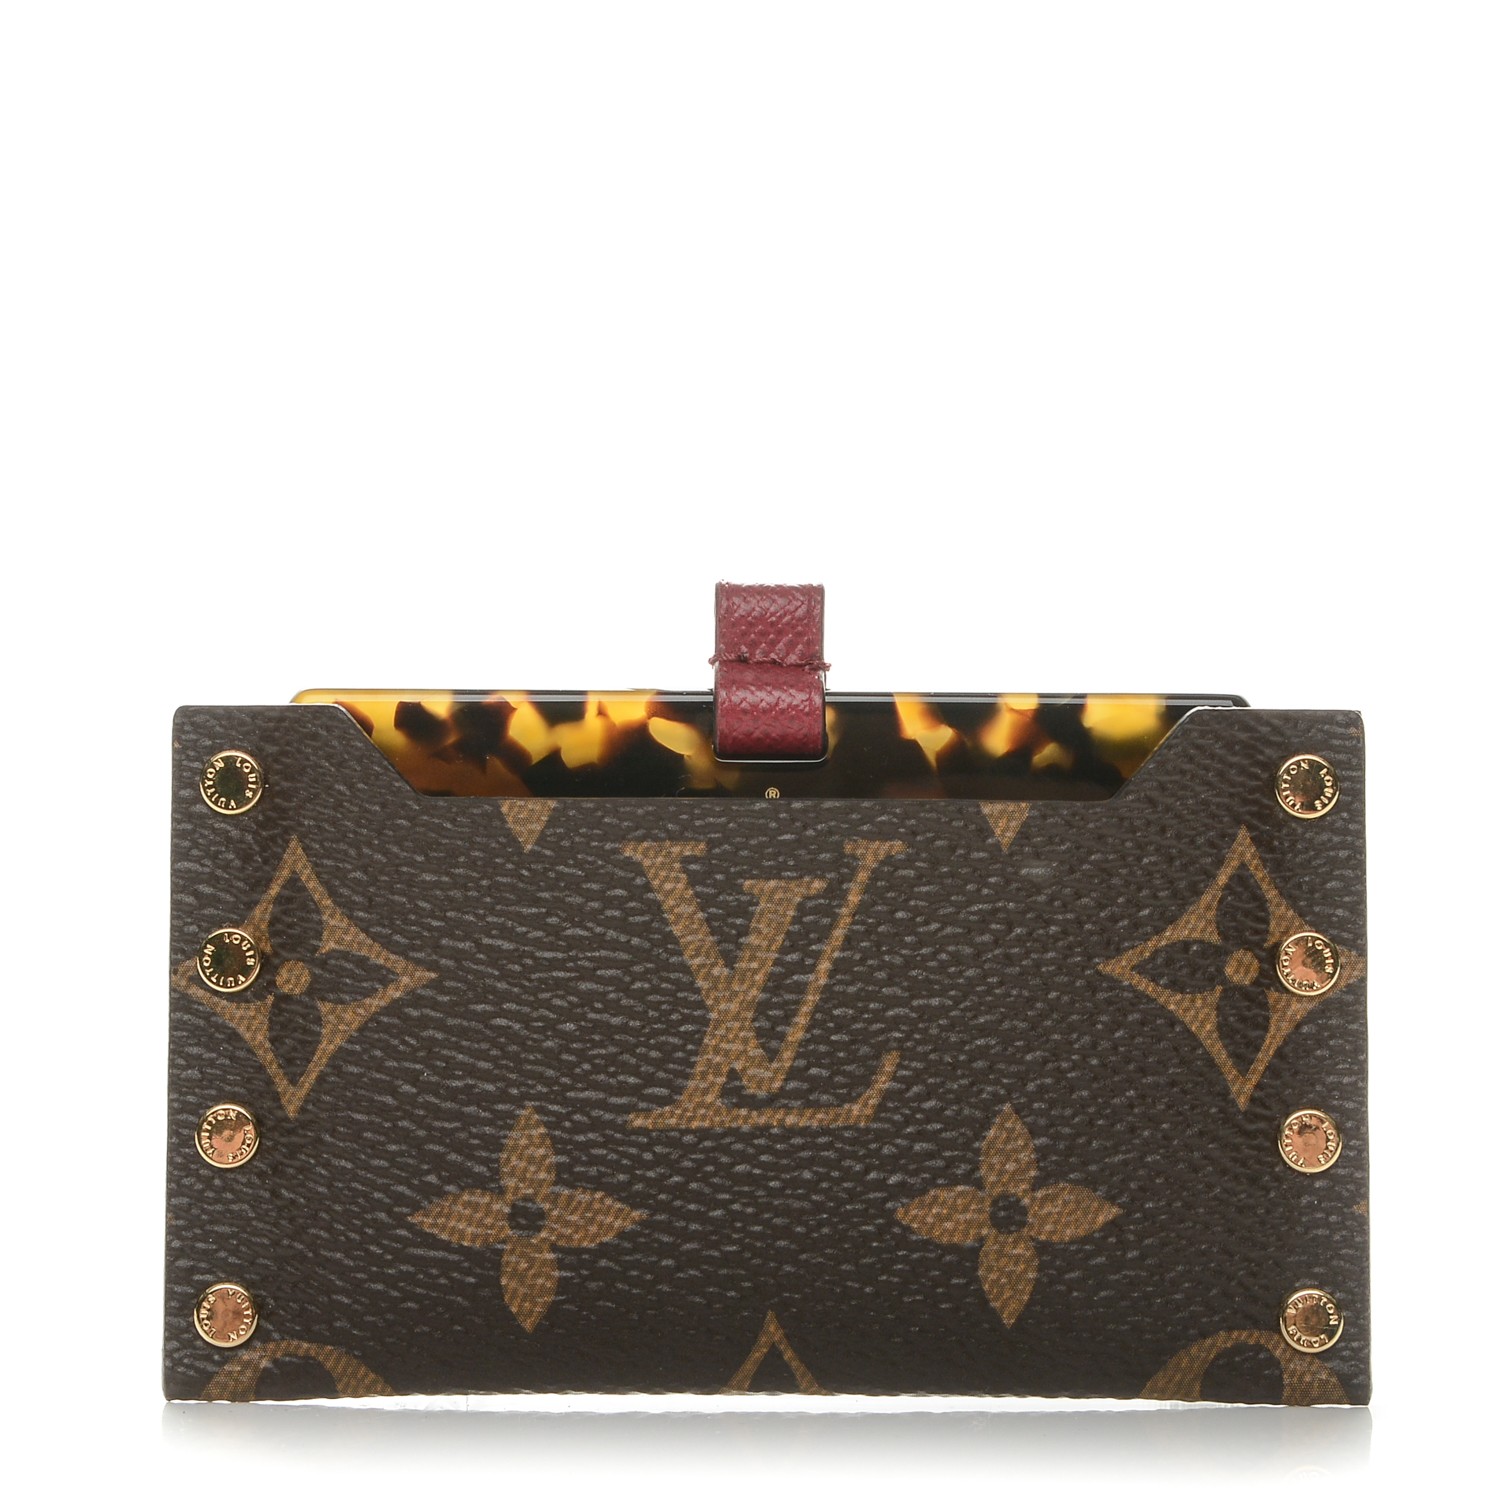 Louis Vuitton Wallet Case Cases, Covers & Skins